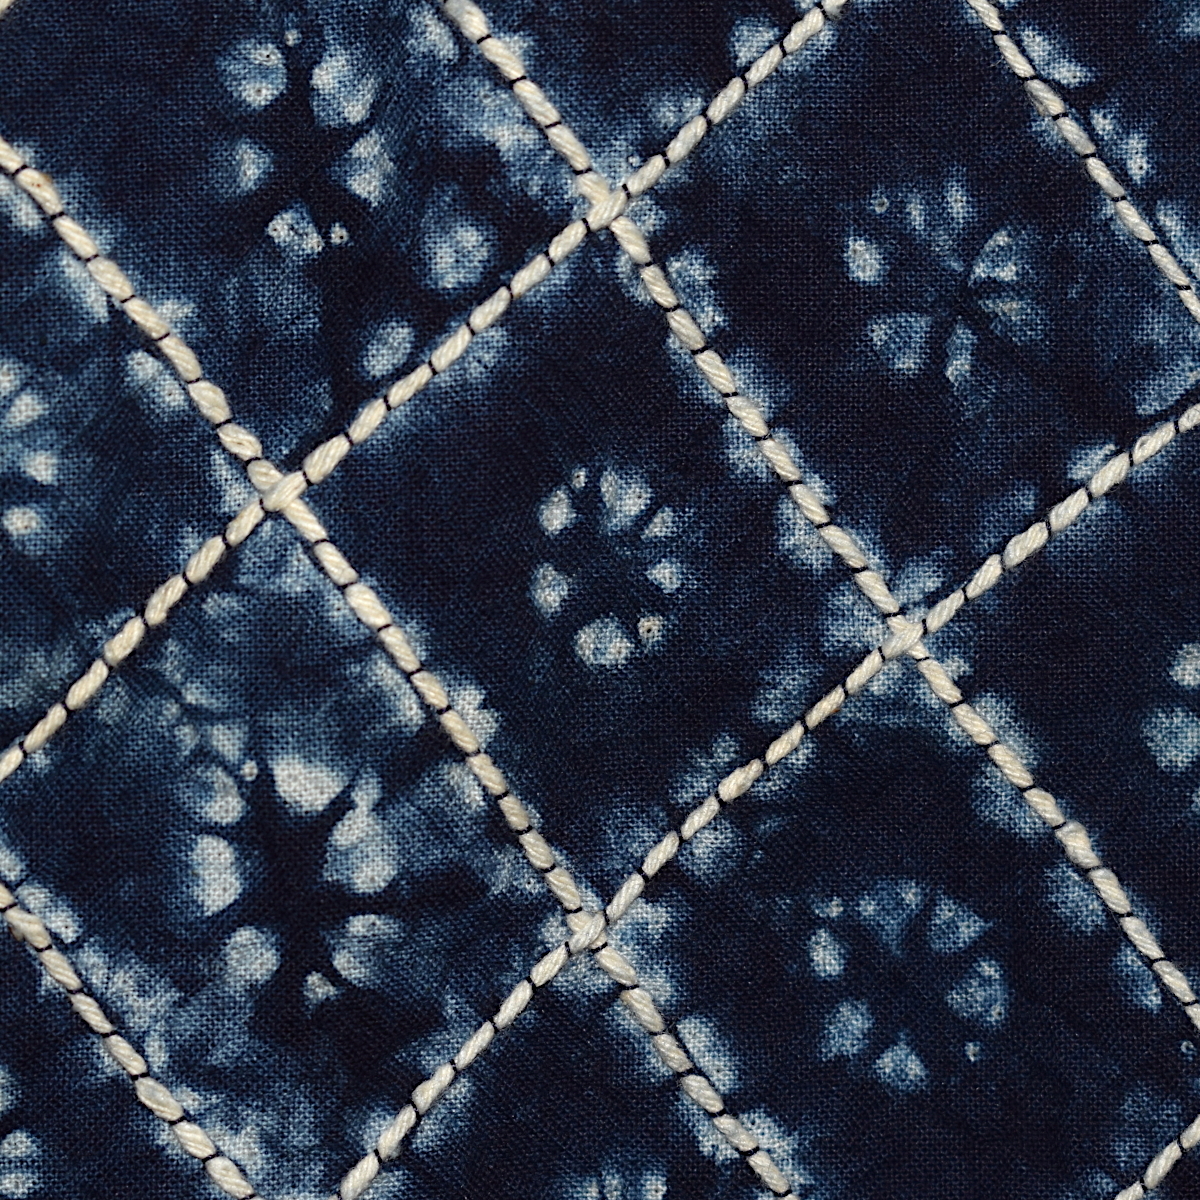 藍染 刺し子 テーブルクロス 大判 タペストリー マルチカバー 横幅約138cm 縦幅約178cm 綿 【cb-12】の画像4